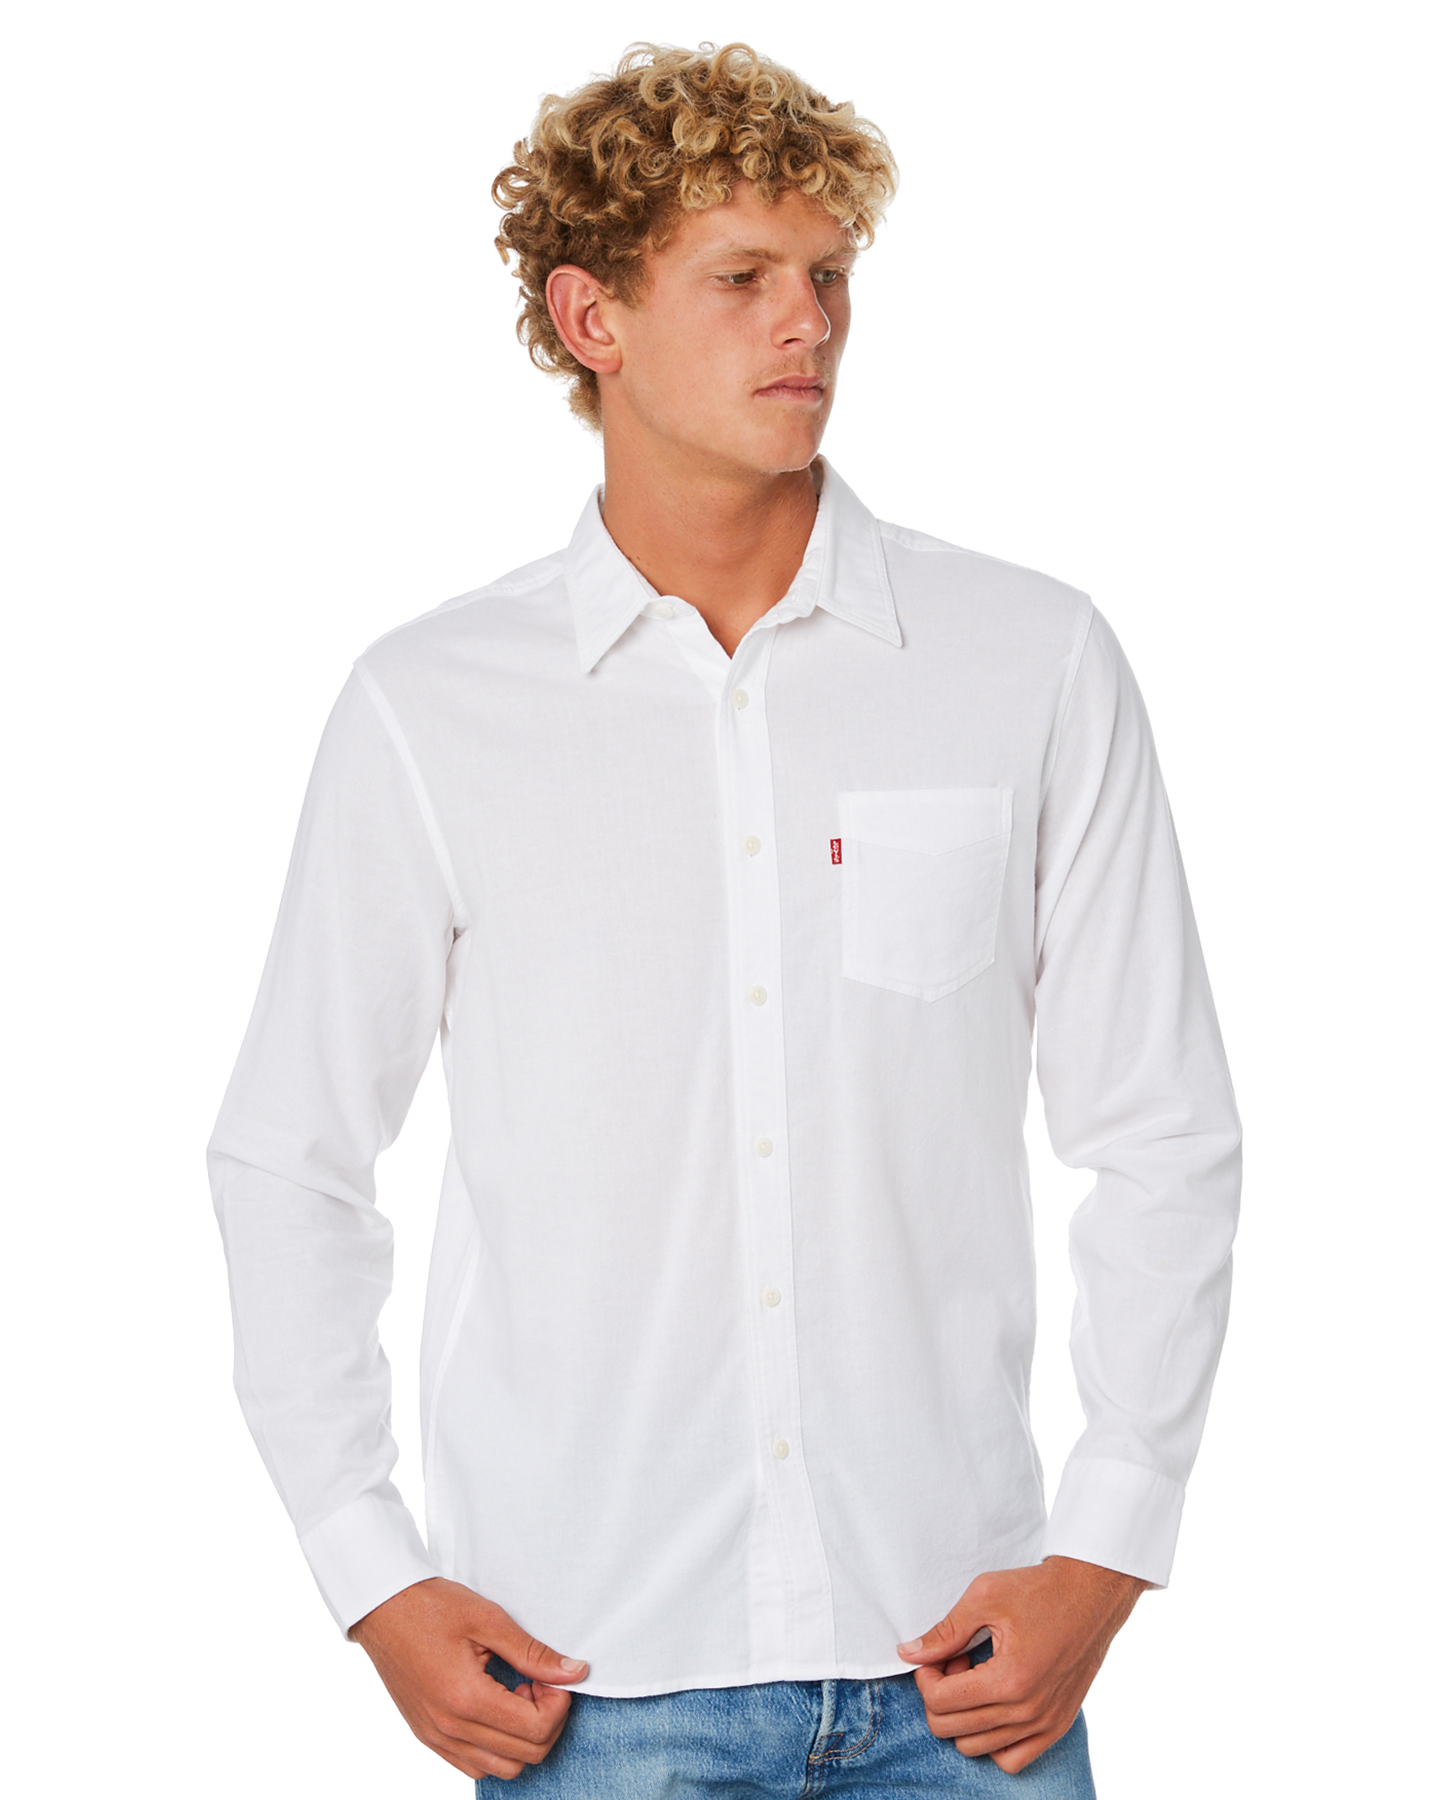 levis white shirt for men